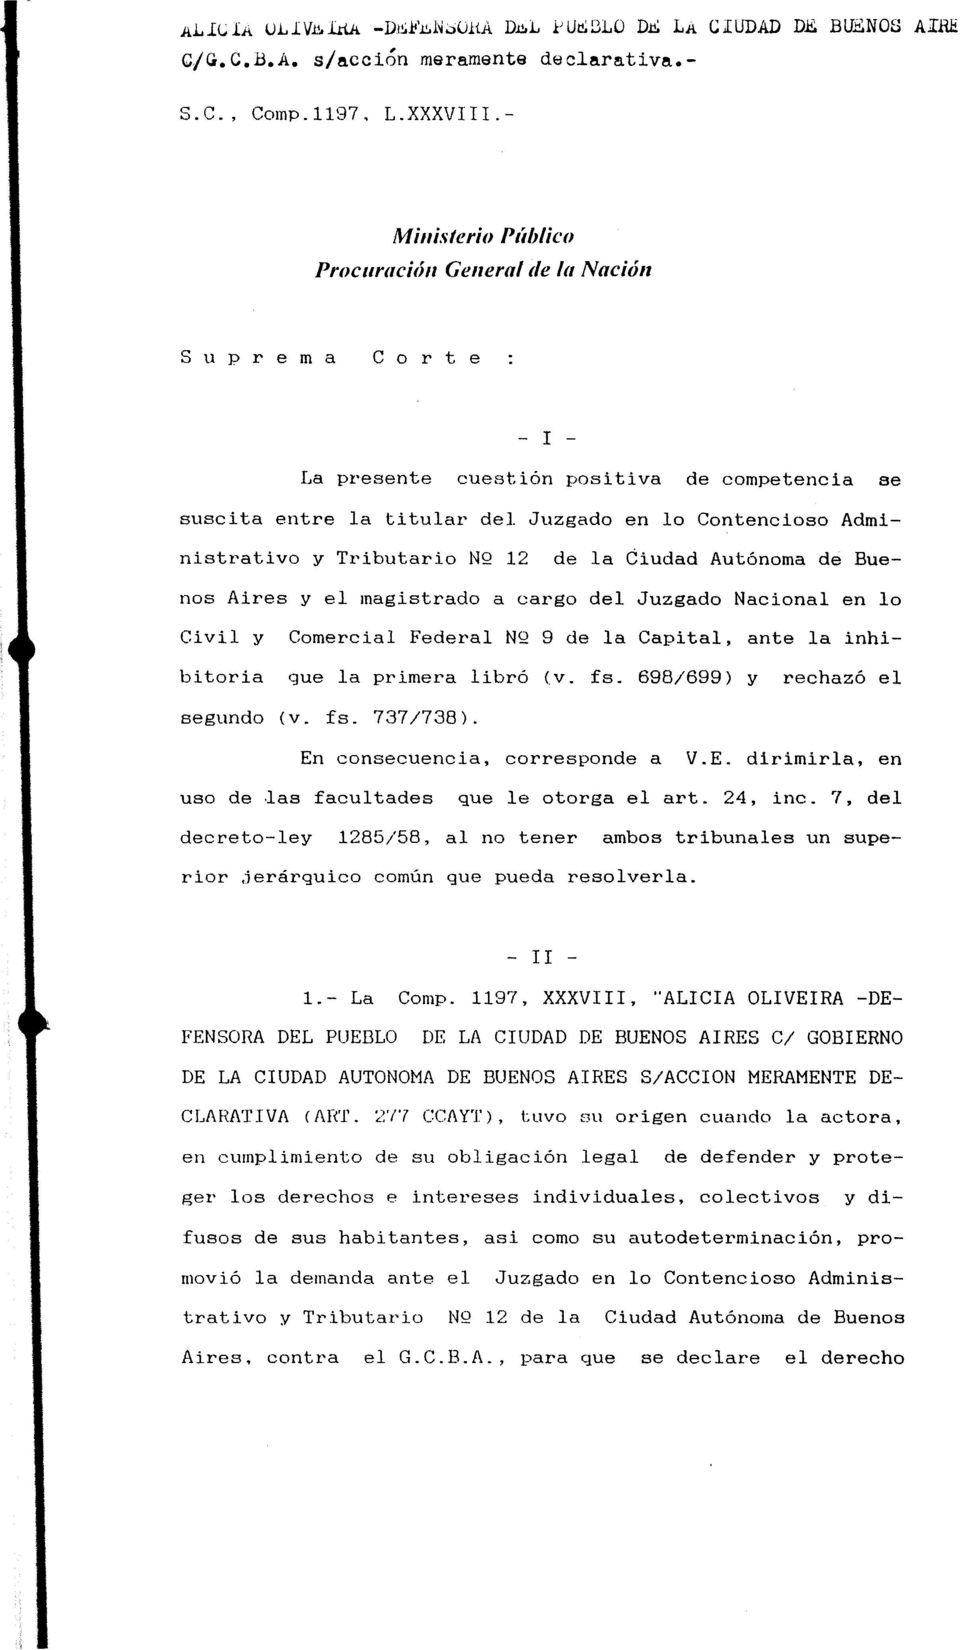 Administrativo y Tributario NQ 12 de la Ciudad Autónoma de Buenos Aires y el magistrado a cargo del Juzgado Nacional en lo Civil y Comercial Federal NQ 9 de la Capital, ante la inhibitoria que la